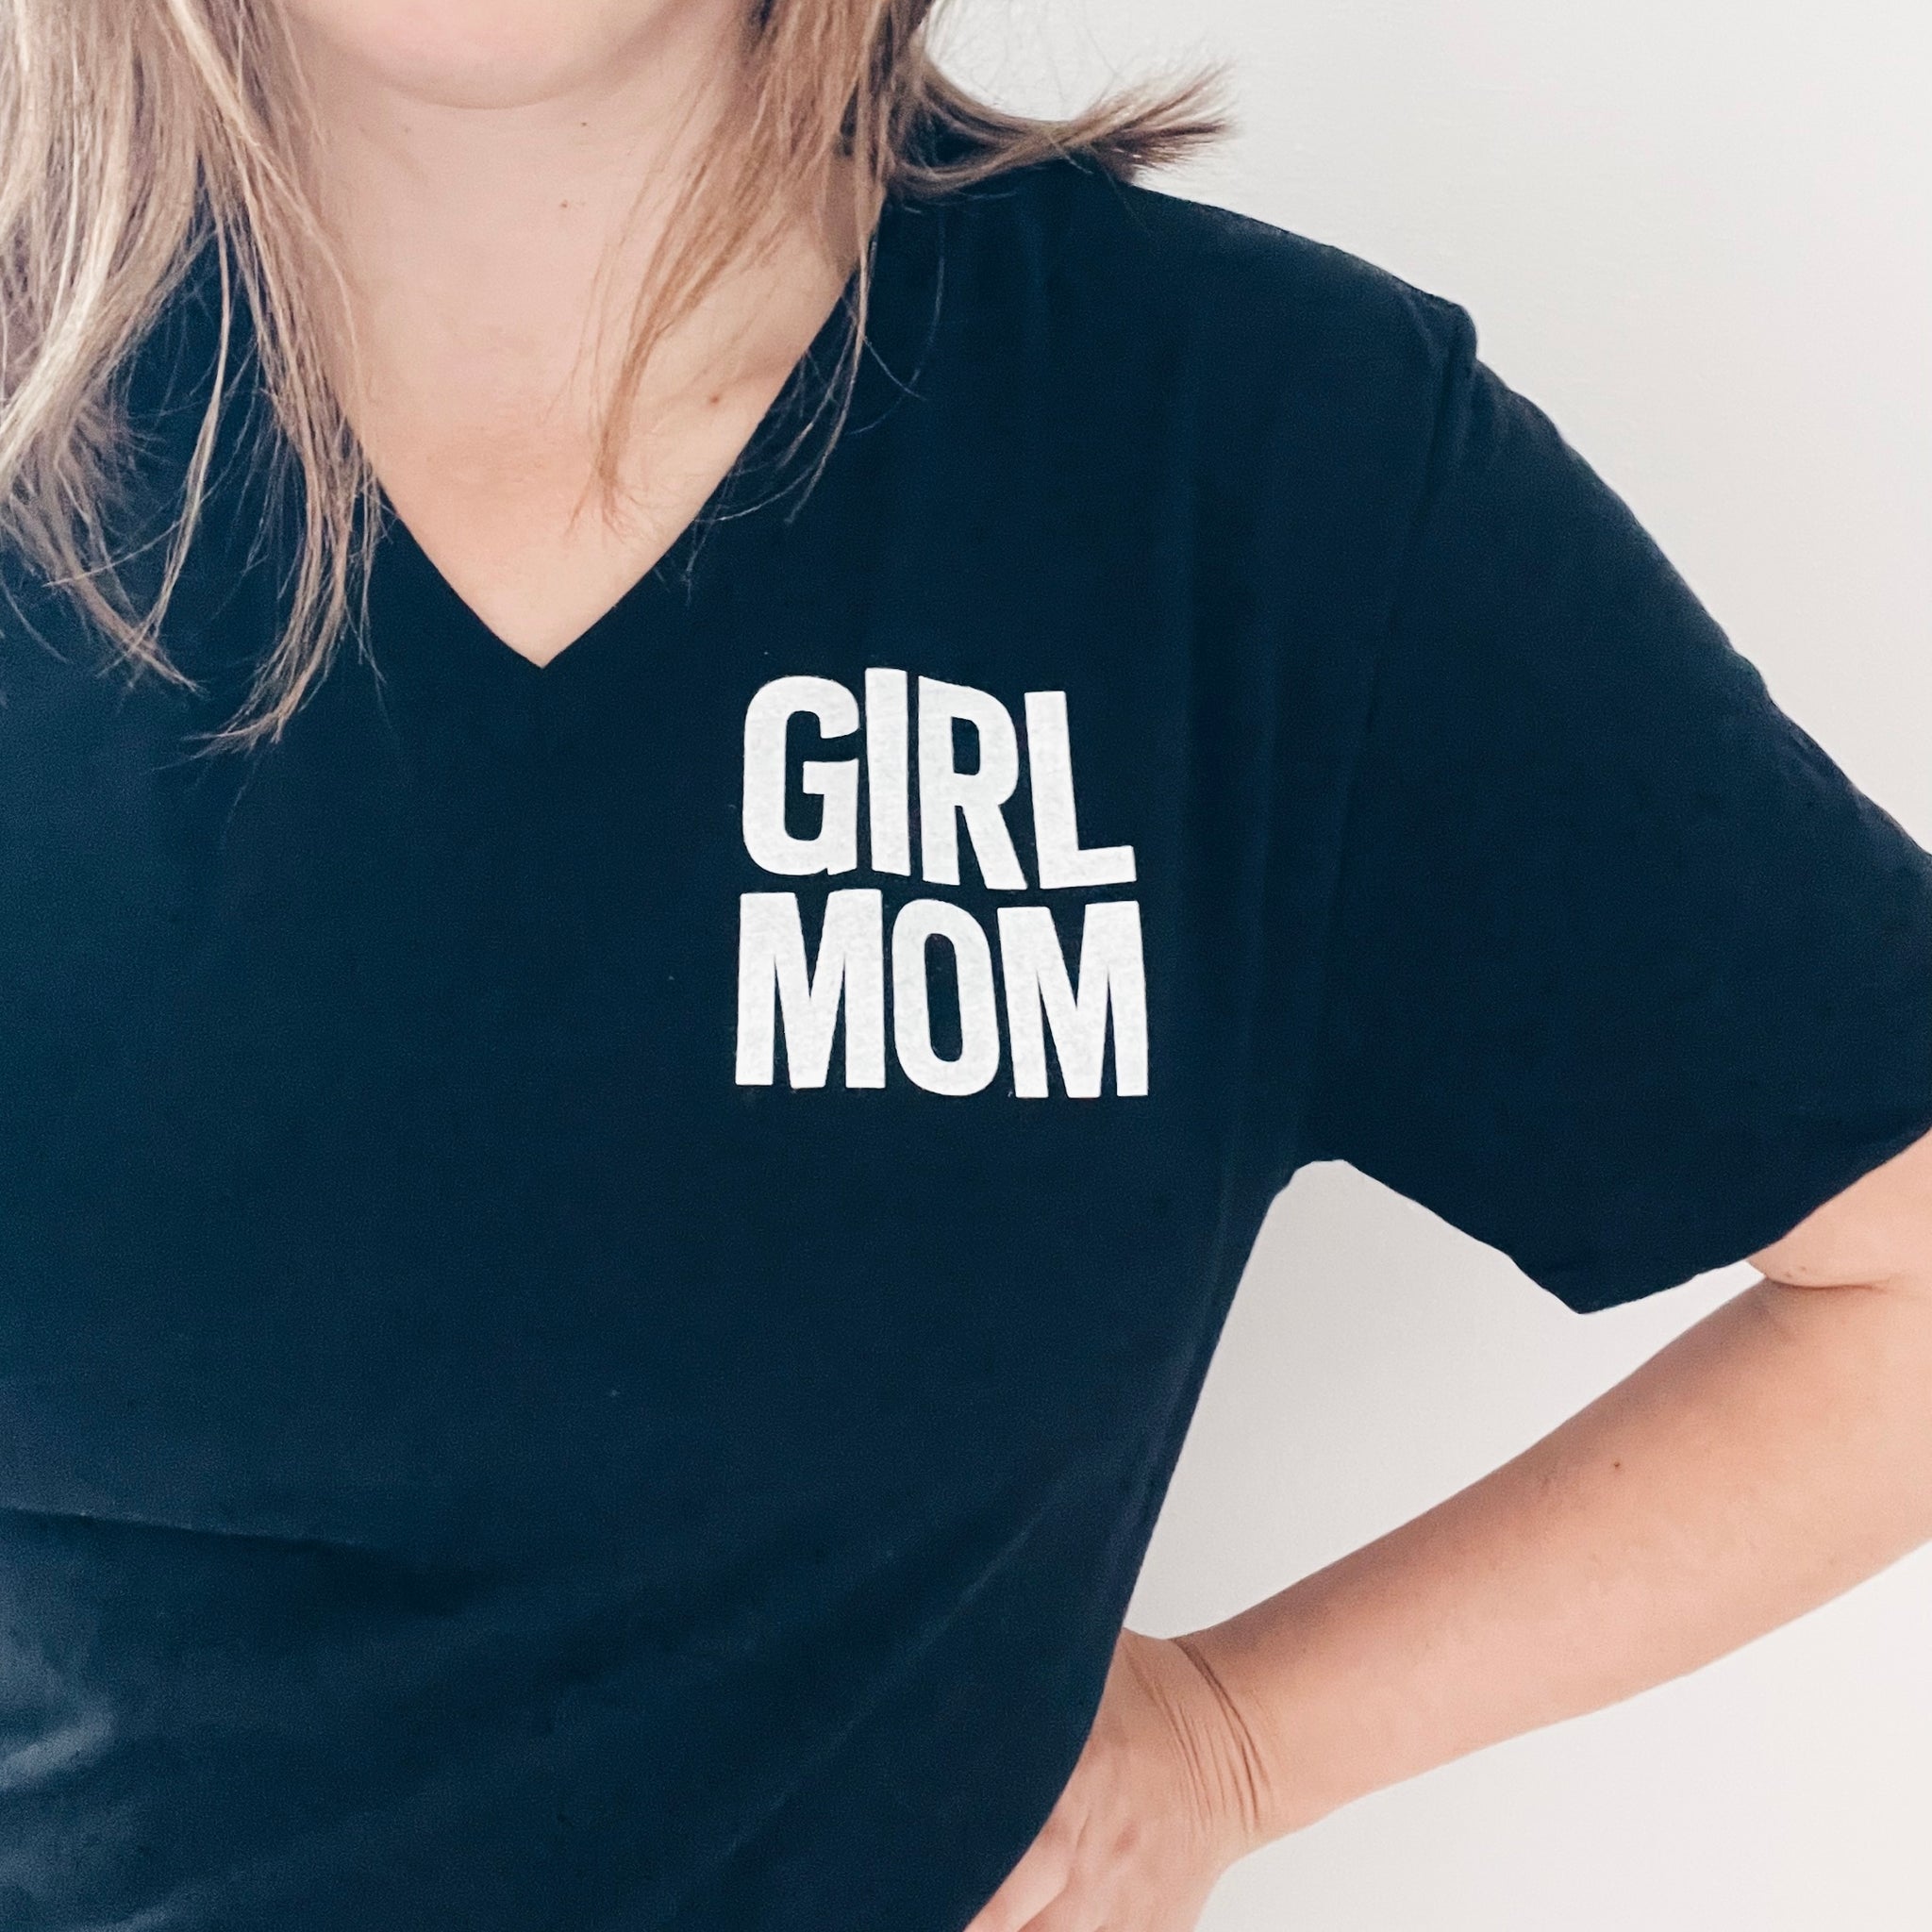 GIRL MOM V-NECK T-SHIRT – GIRL WONDERFUL